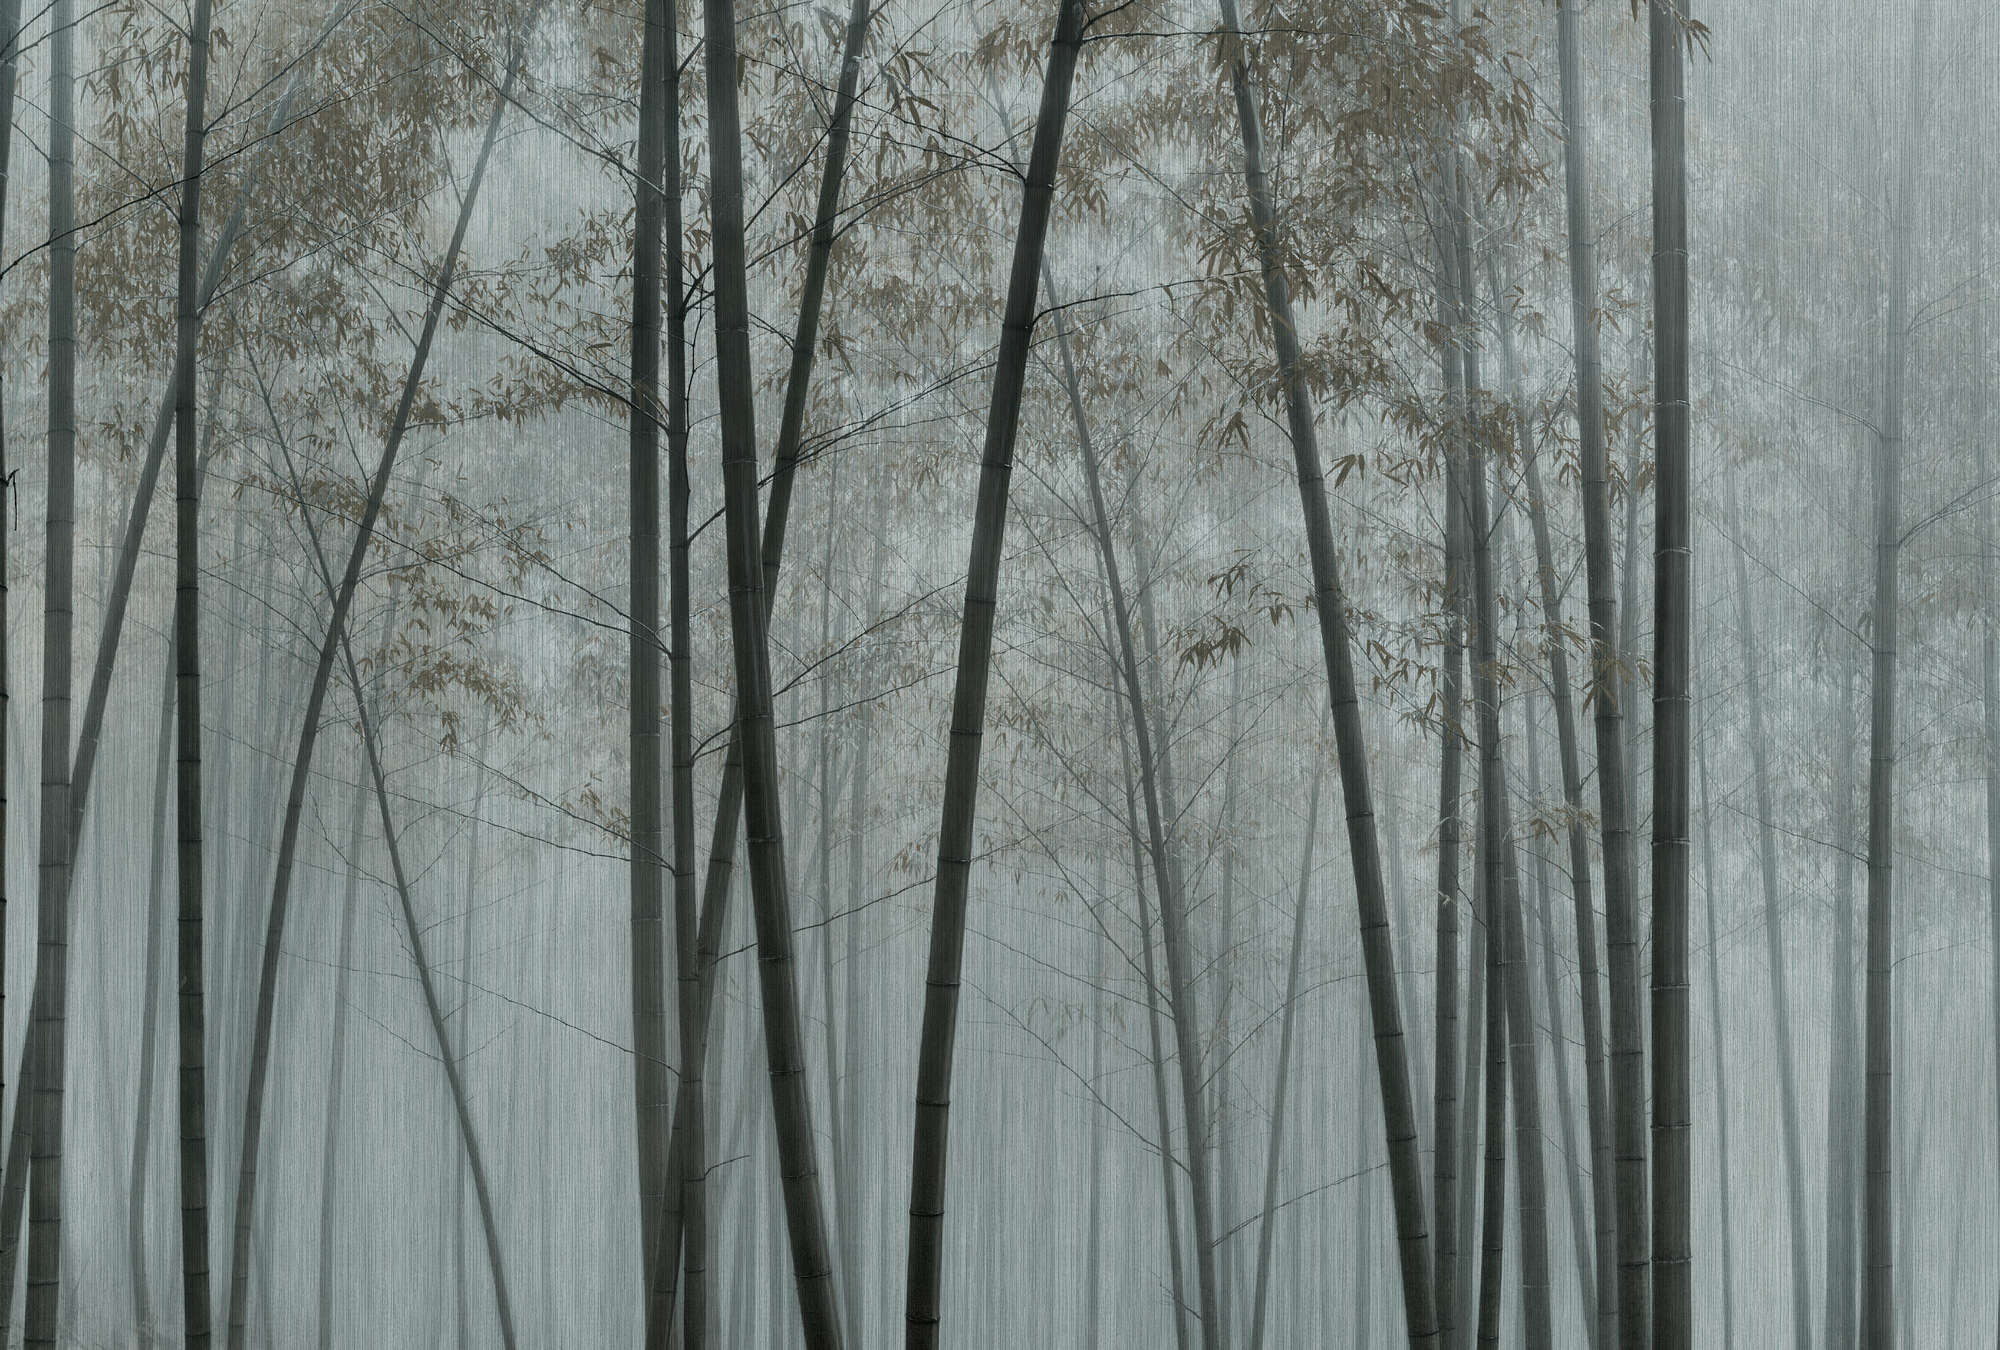             En el bambú 1 - Papel pintado de bambú Bosque de bambú en la niebla
        